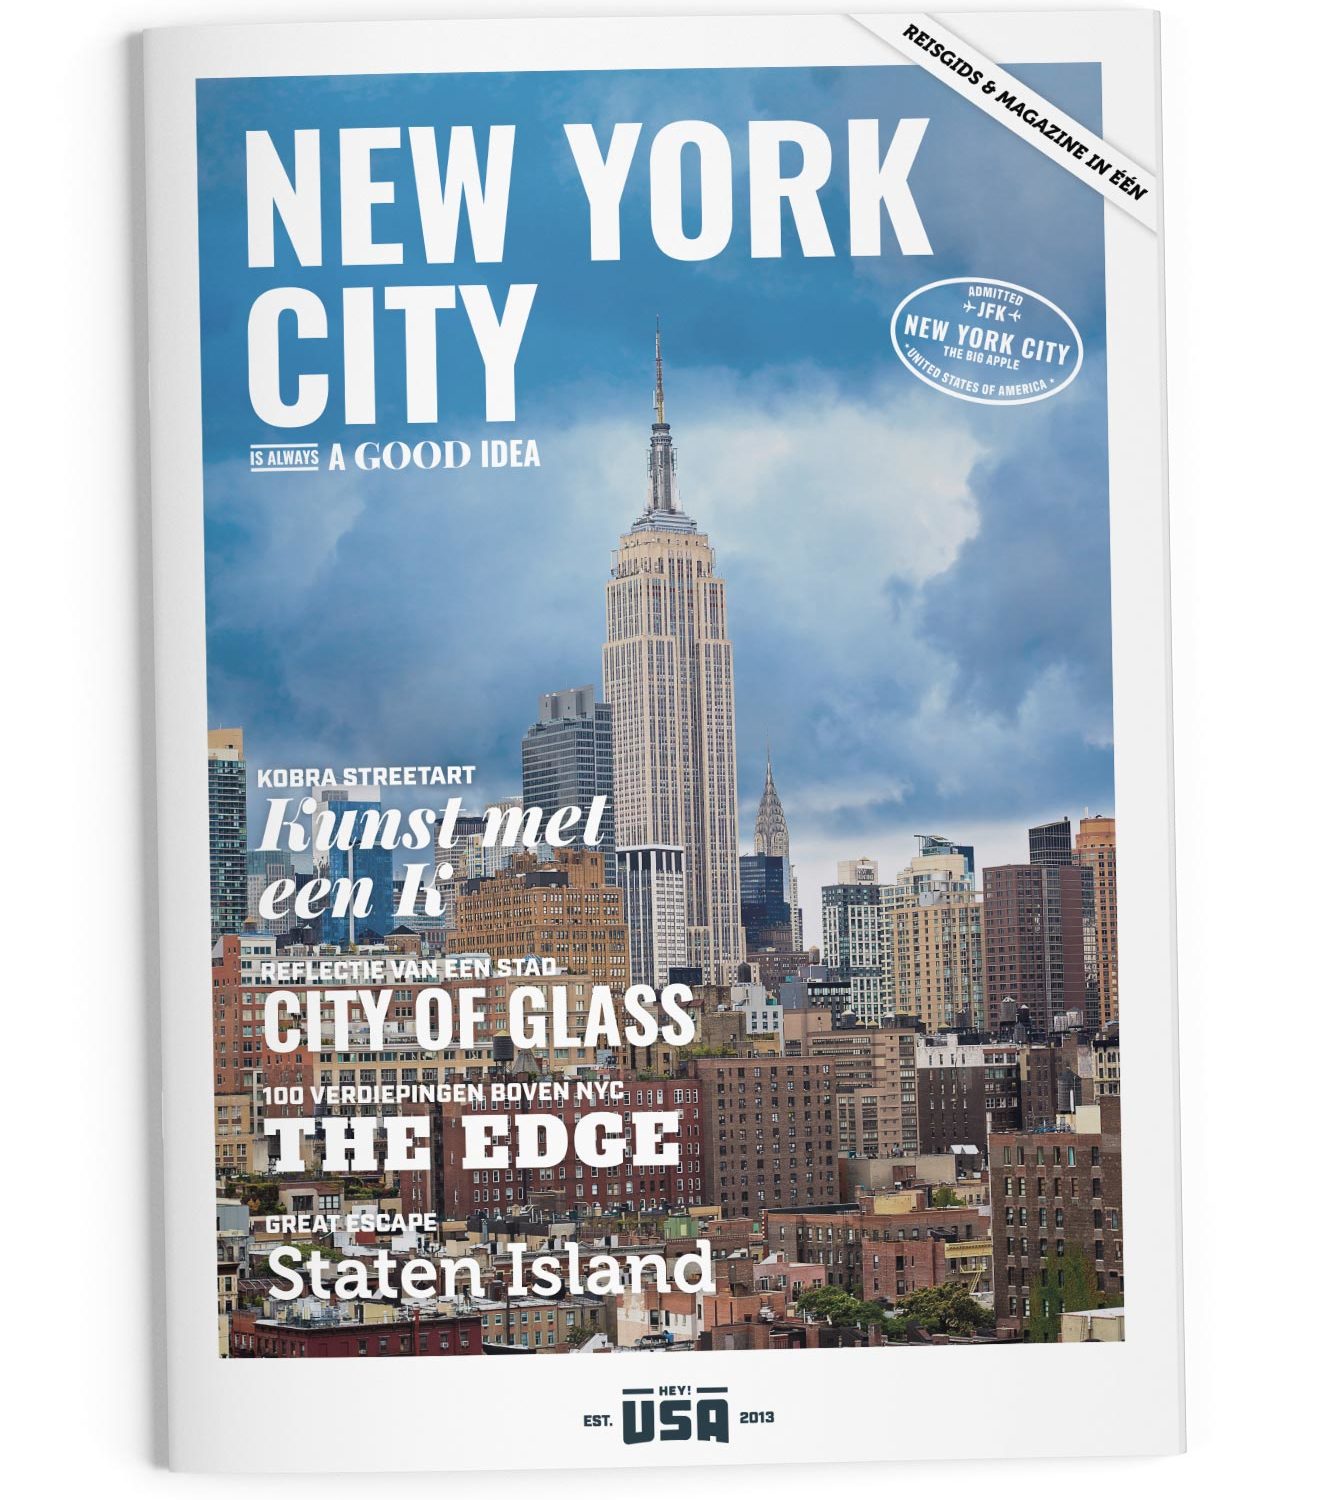 Het New York City magazine van Hey!USA een crossover tussen magazine & reisgids